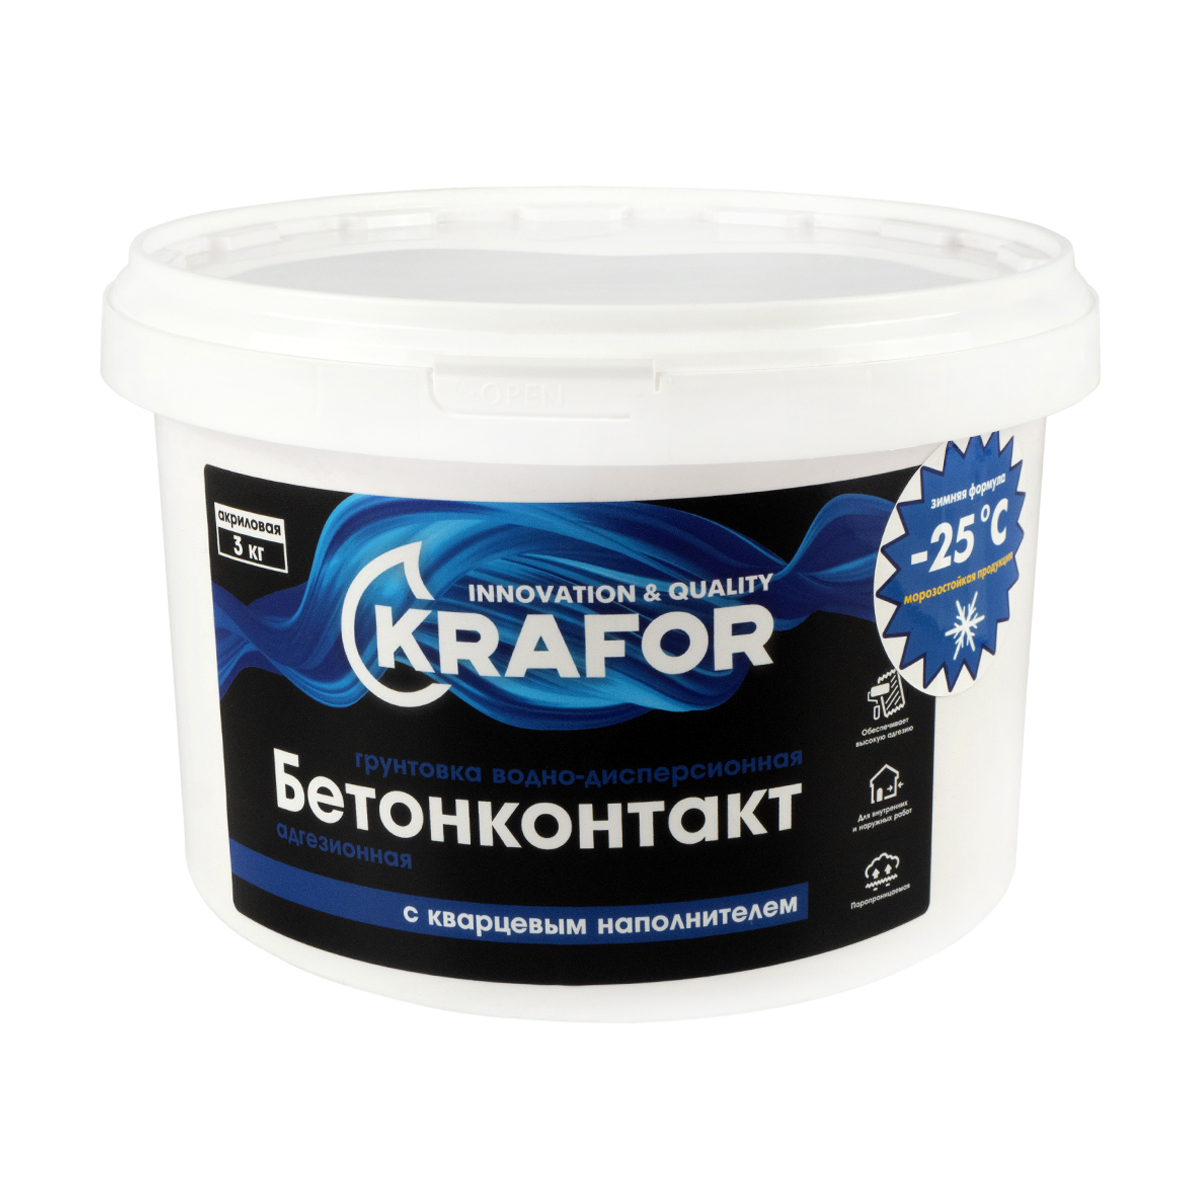 Грунтовка Krafor водно-дисперсионная бетонконтакт, 3 кг грунтовка plitonit бетонконтакт 1 5 кг